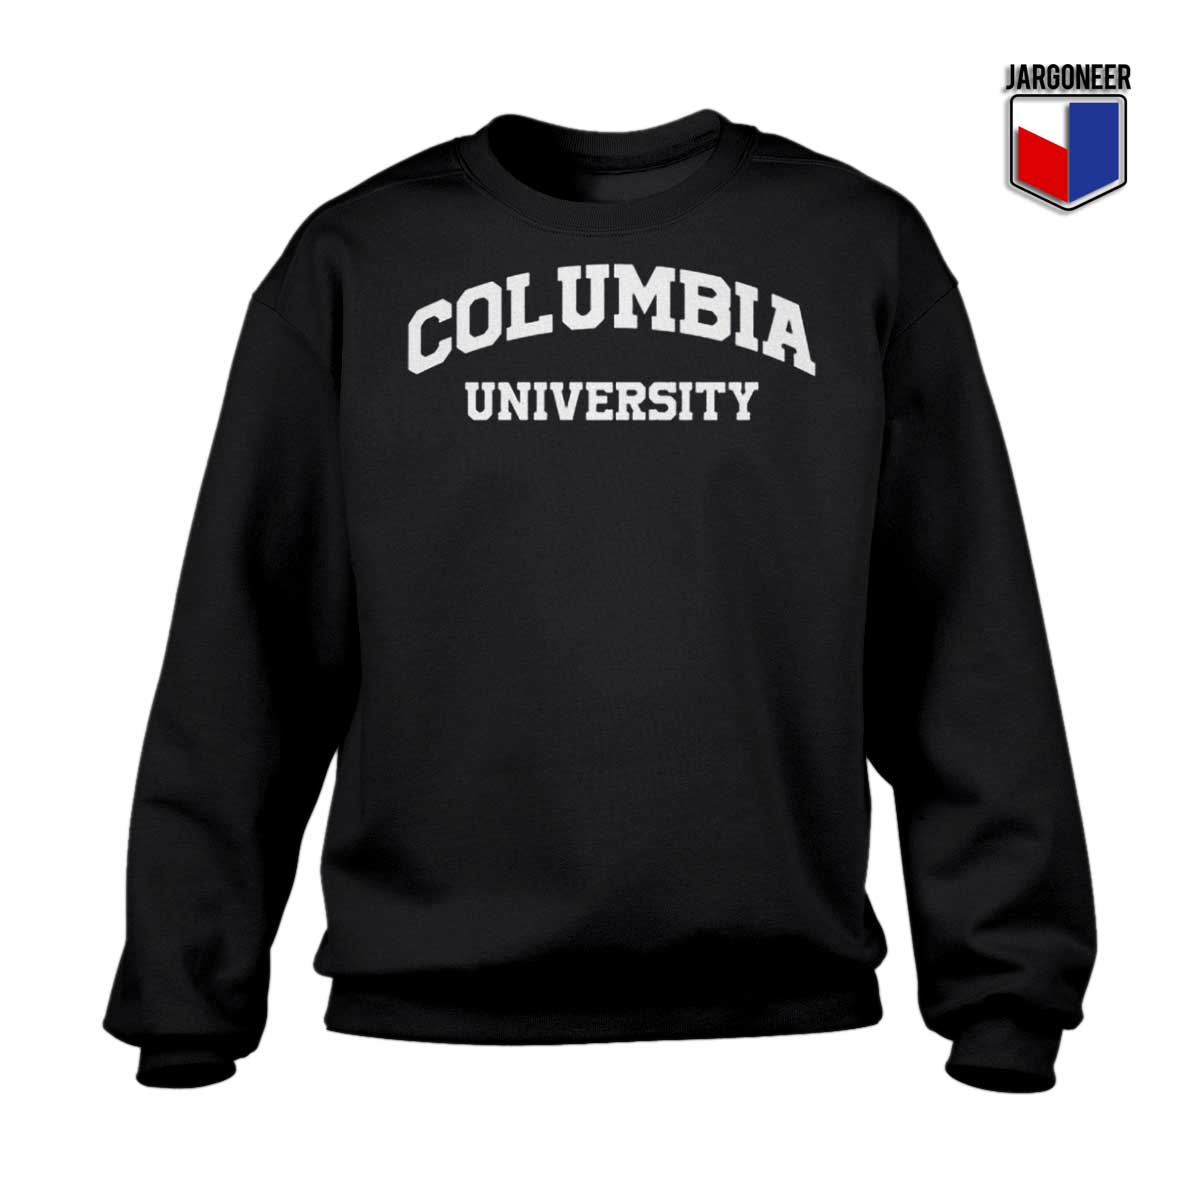 Columbia University Sweatshirt - Shop Unique Graphic Cool Shirt Designs